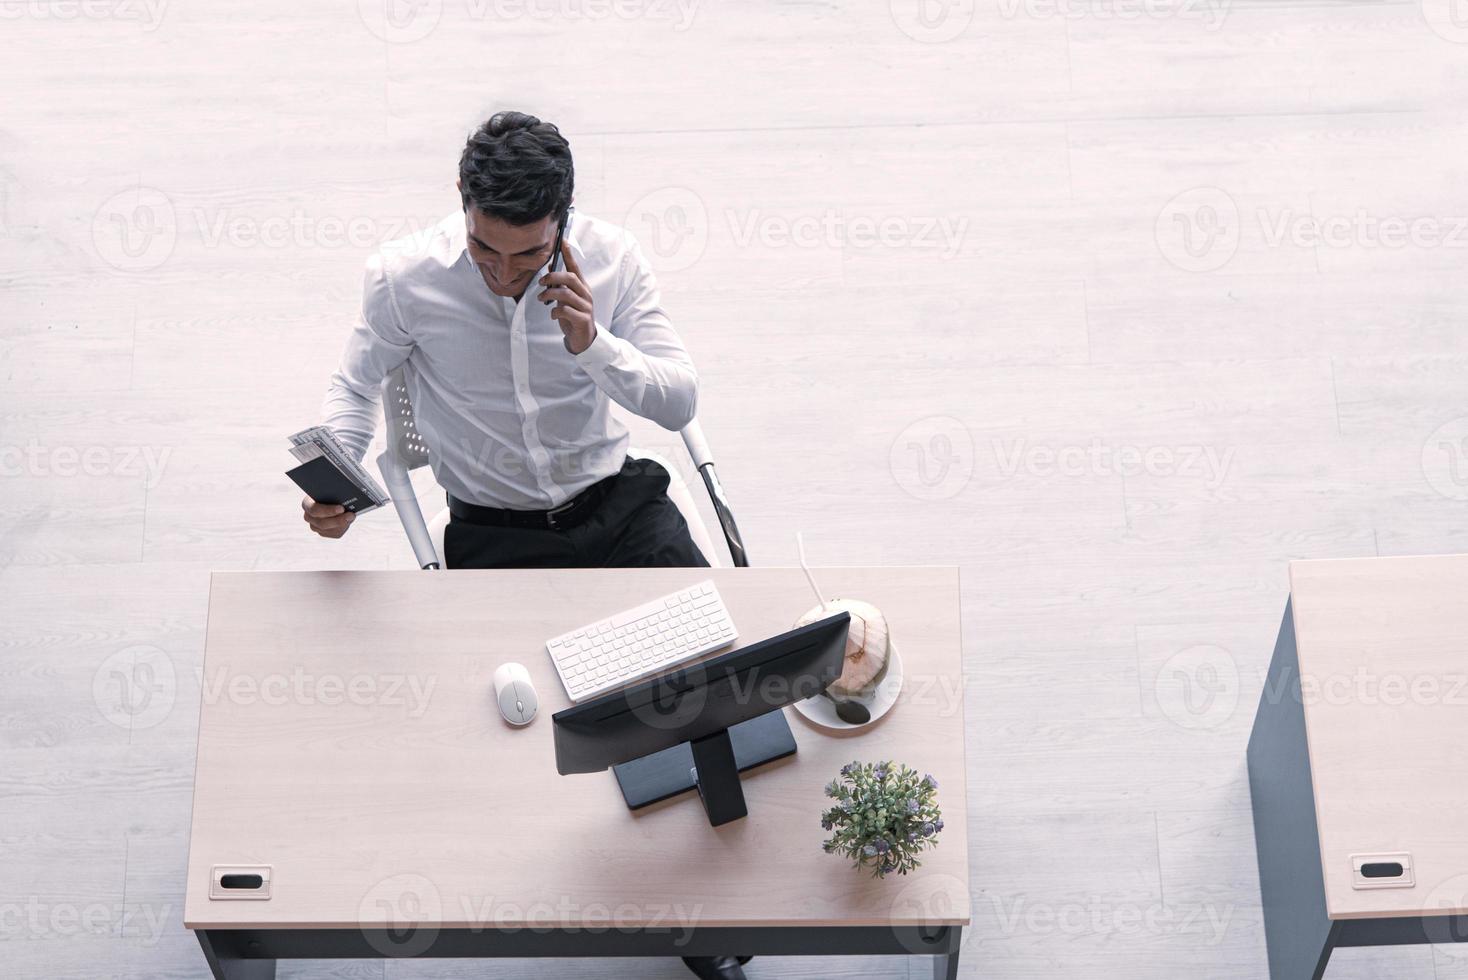 vista superior del ejecutivo, gerente o ingeniero bebiendo jugo de coco trabajando en una computadora usando un teléfono inteligente en una oficina creativa de distanciamiento social. foto